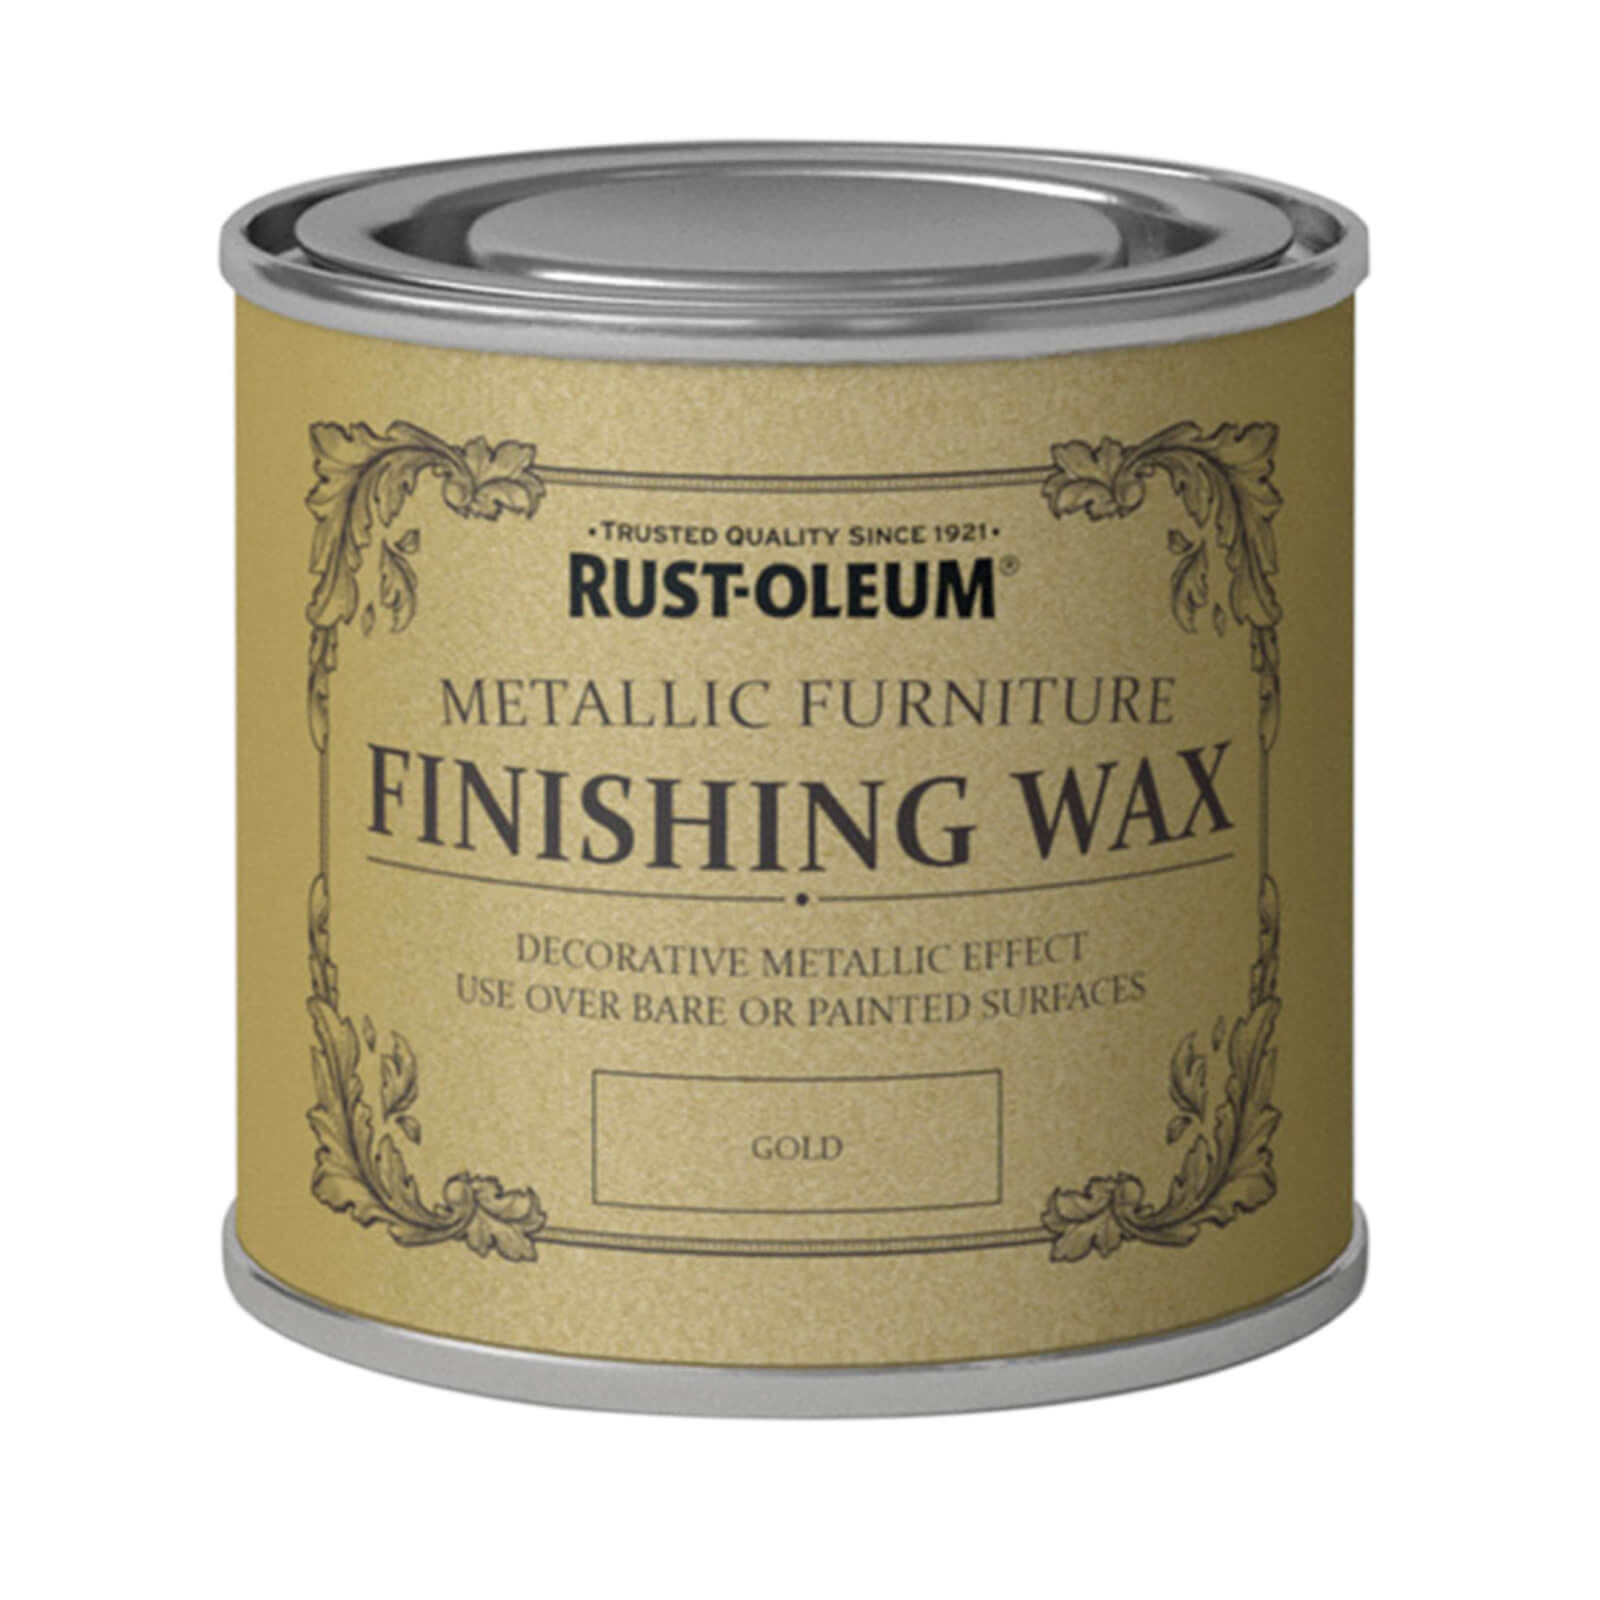 Rust-Oleum Metallic Furniture Finishing Wax Gold - 125ml